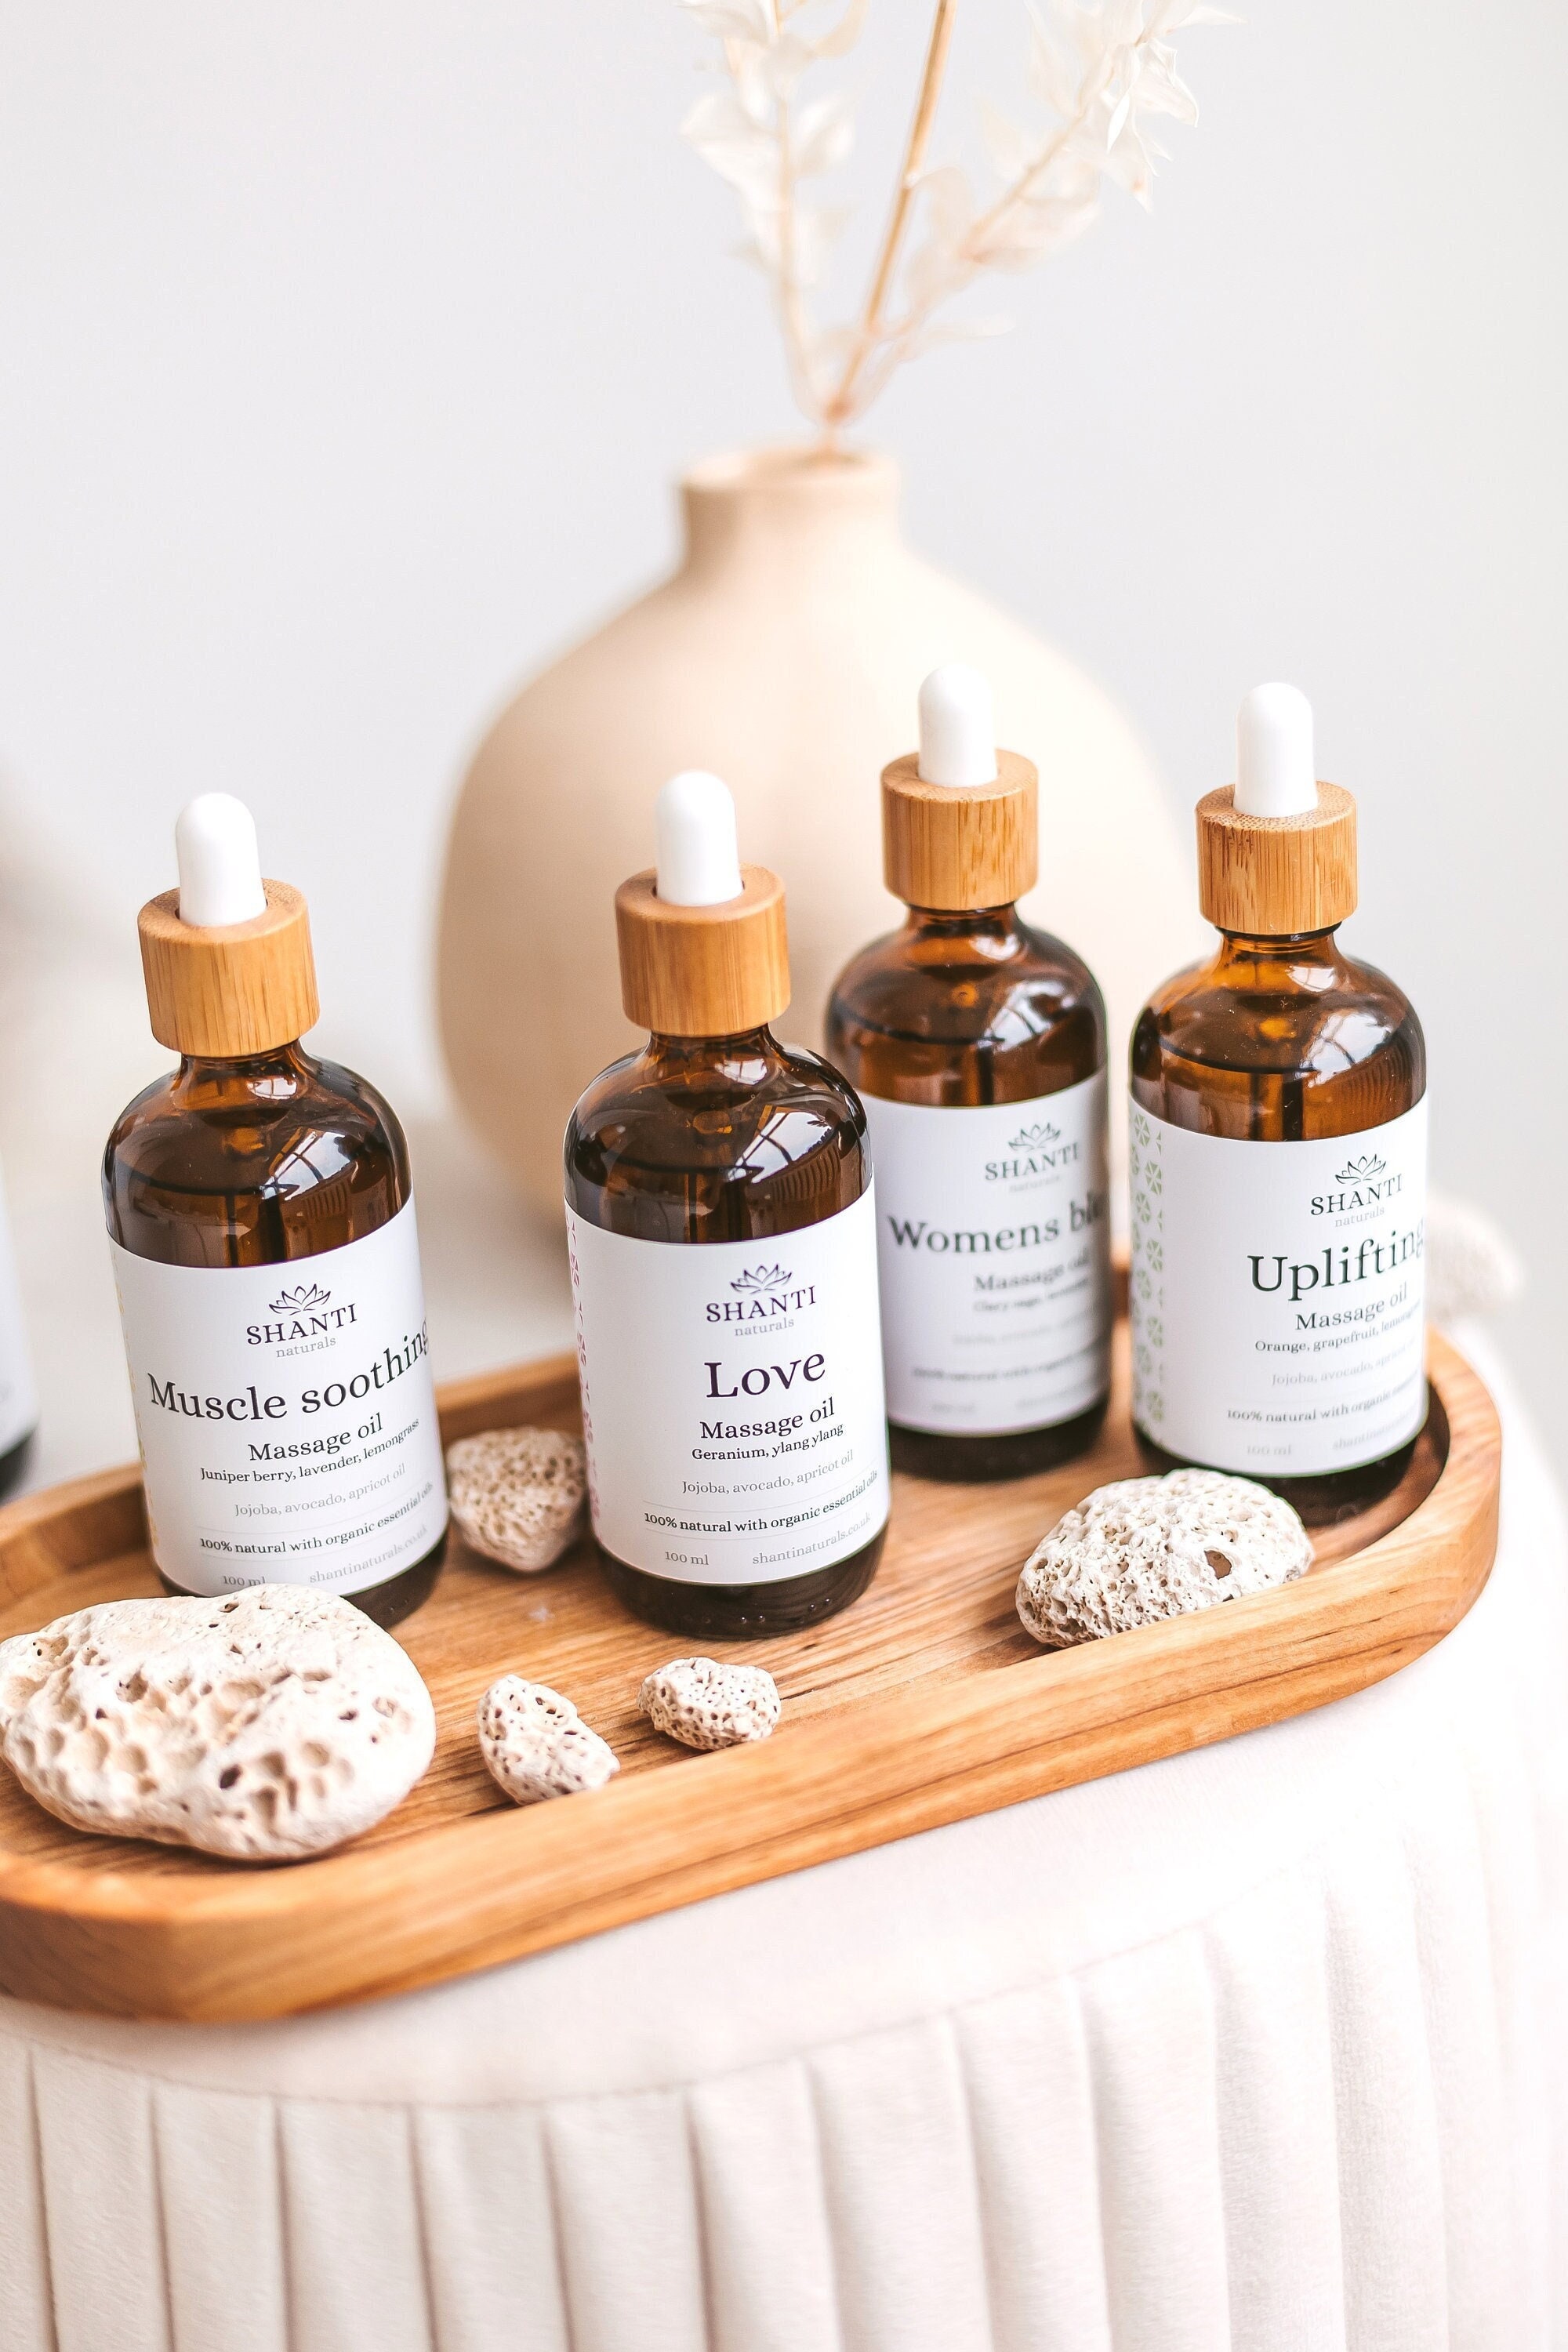 Juego de aceites esenciales – Aceites esenciales puros – Perfecto para  difusor, aromaterapia, masaje, piel, cuidado del cabello y fragancia,  jabón